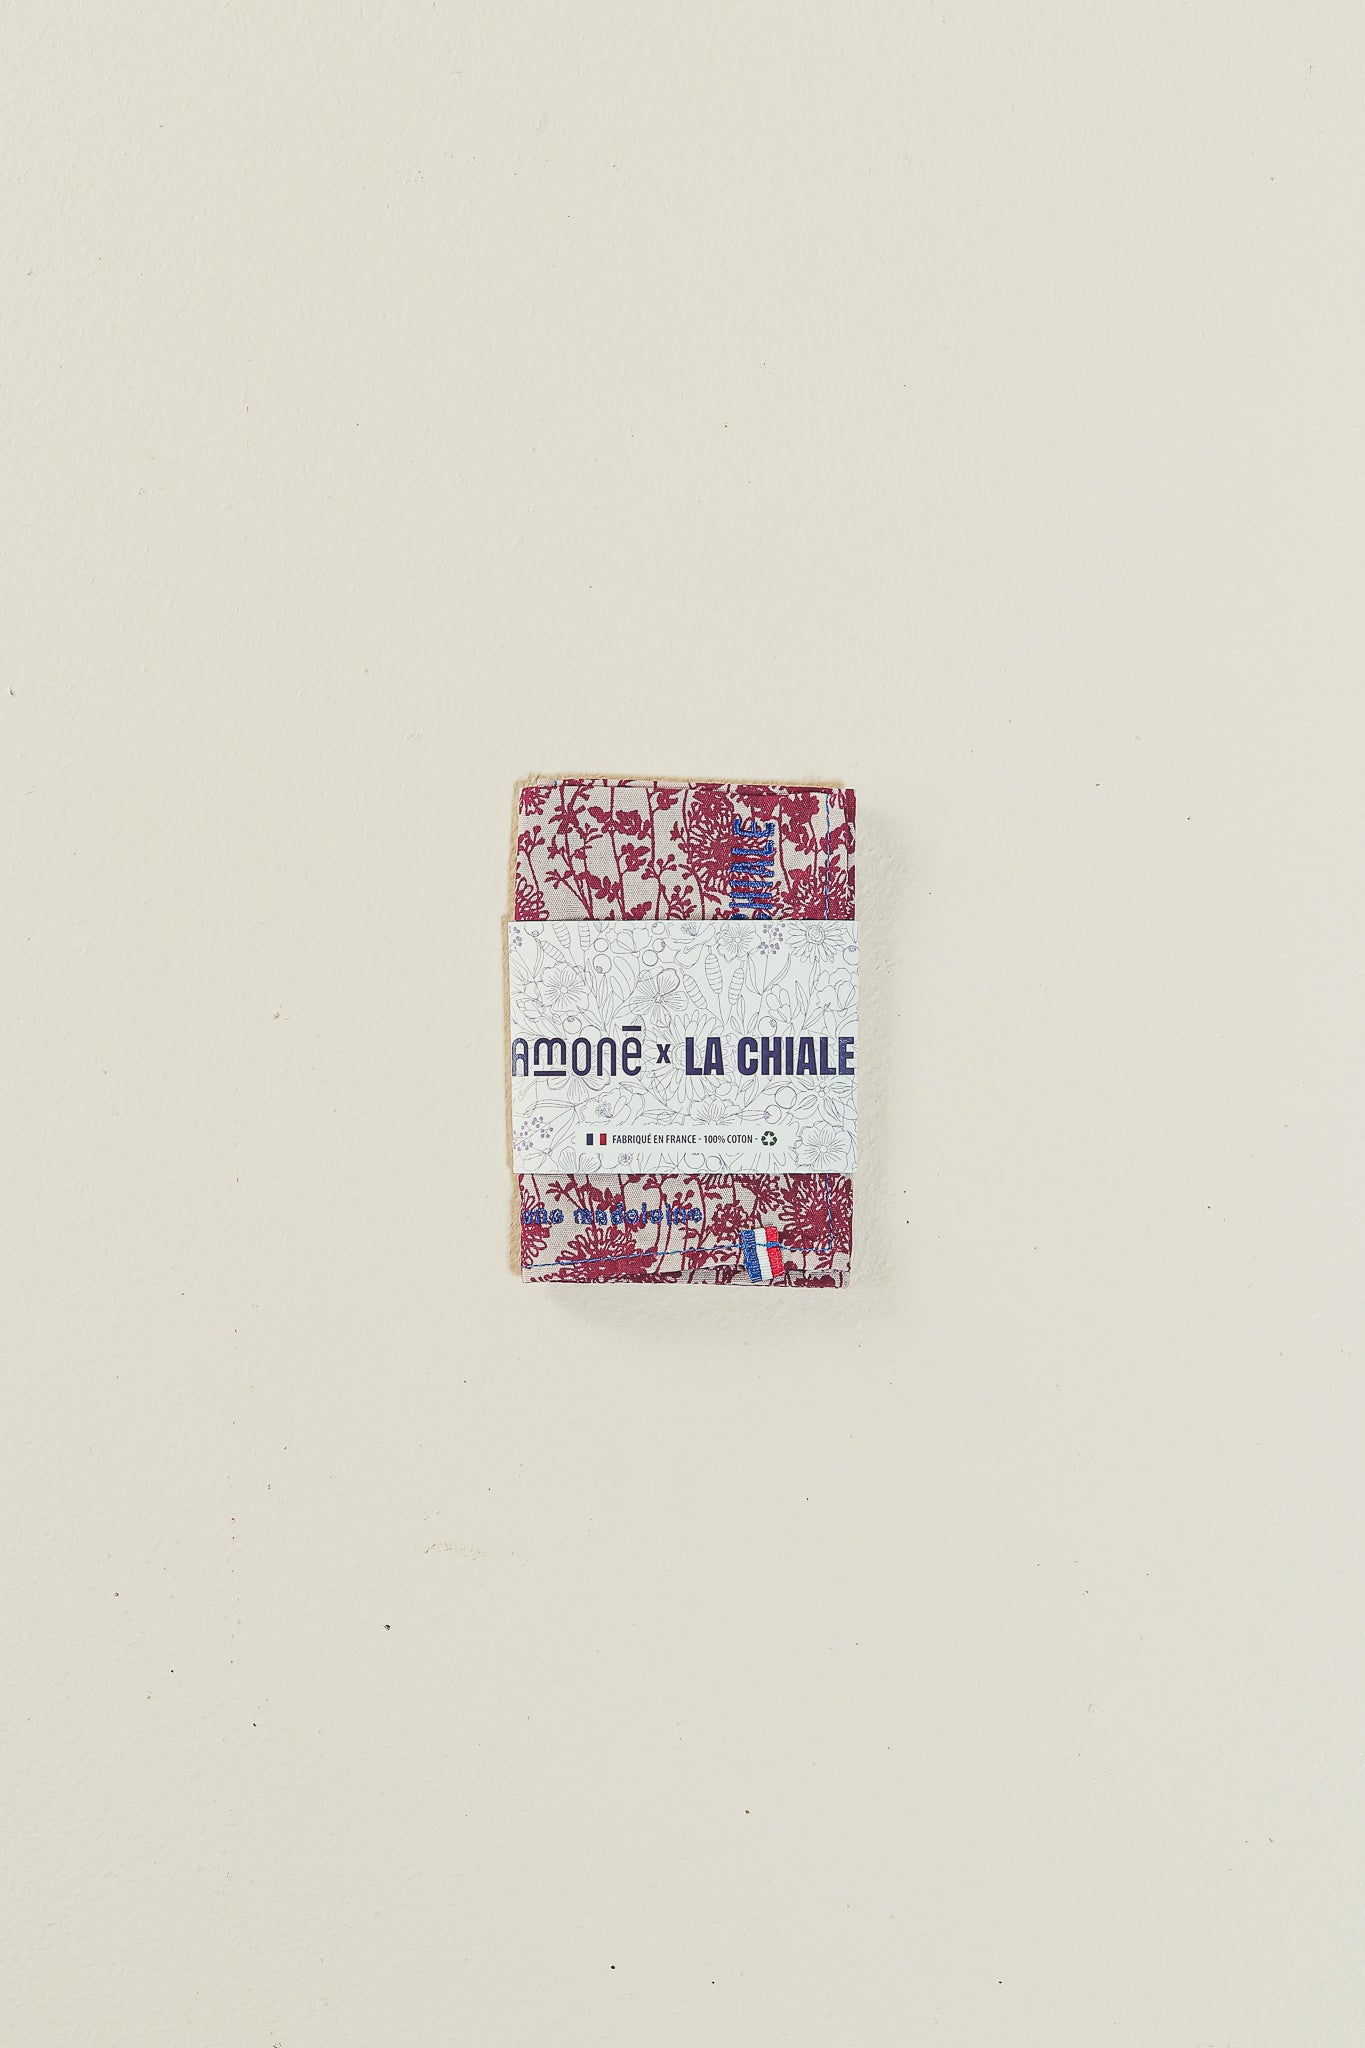 MOUCHOIR FLEURS- vivre d'amour et de cordon bleu - Amoné x la Chiale by Alliées